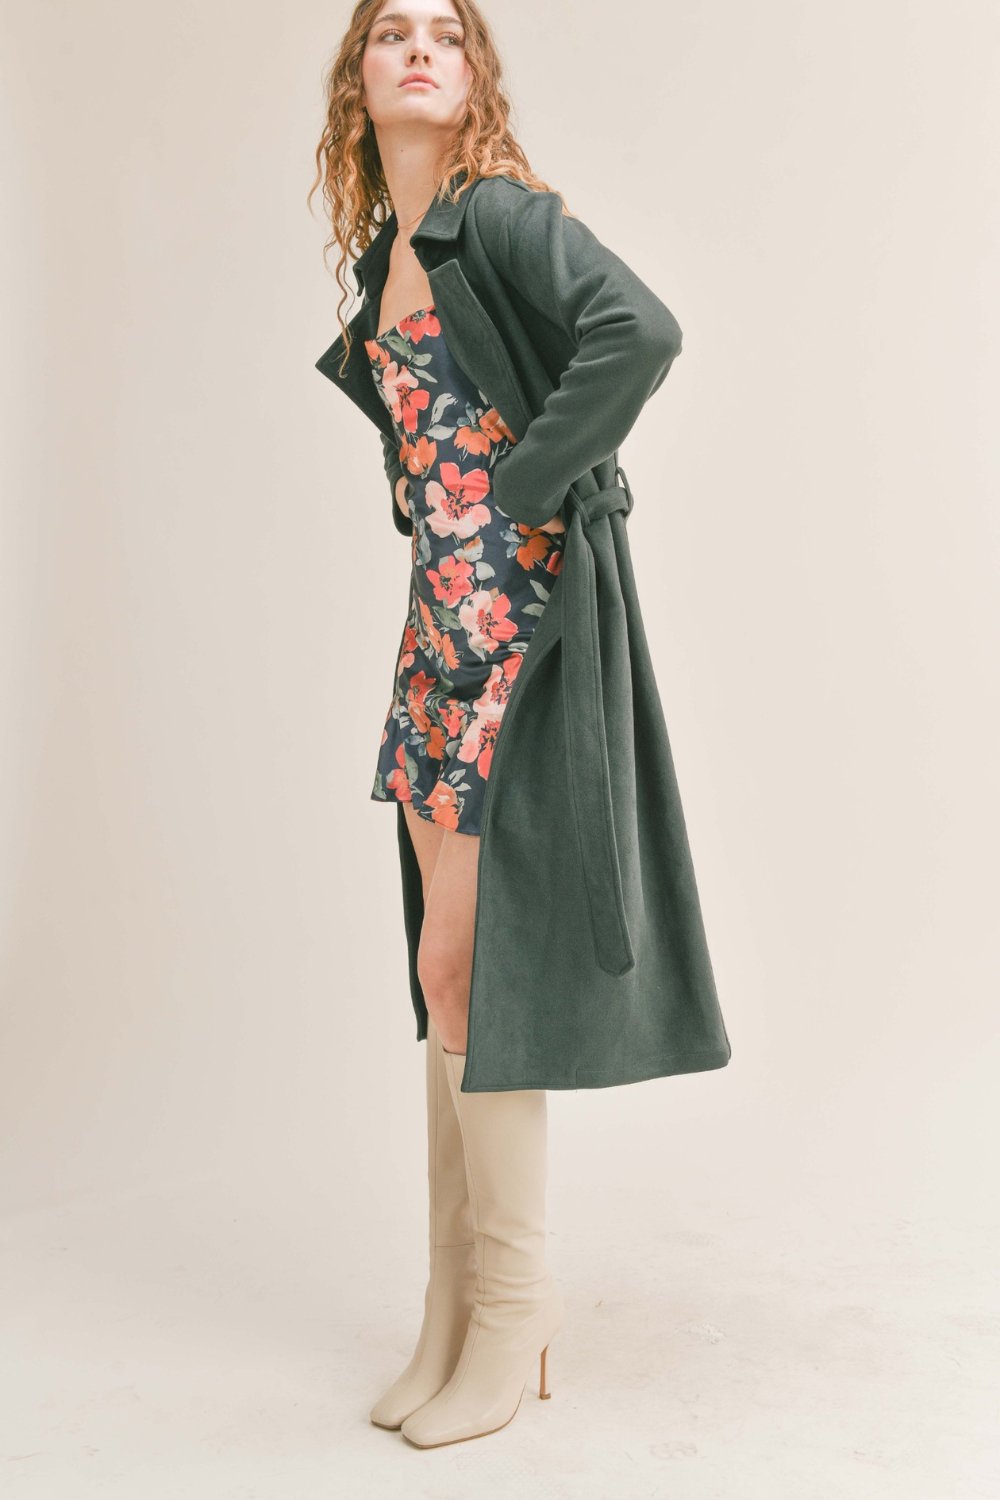 Women's Microsuede Trench Coat | Dark Green Jacket - Women's Coat - Blooming Daily